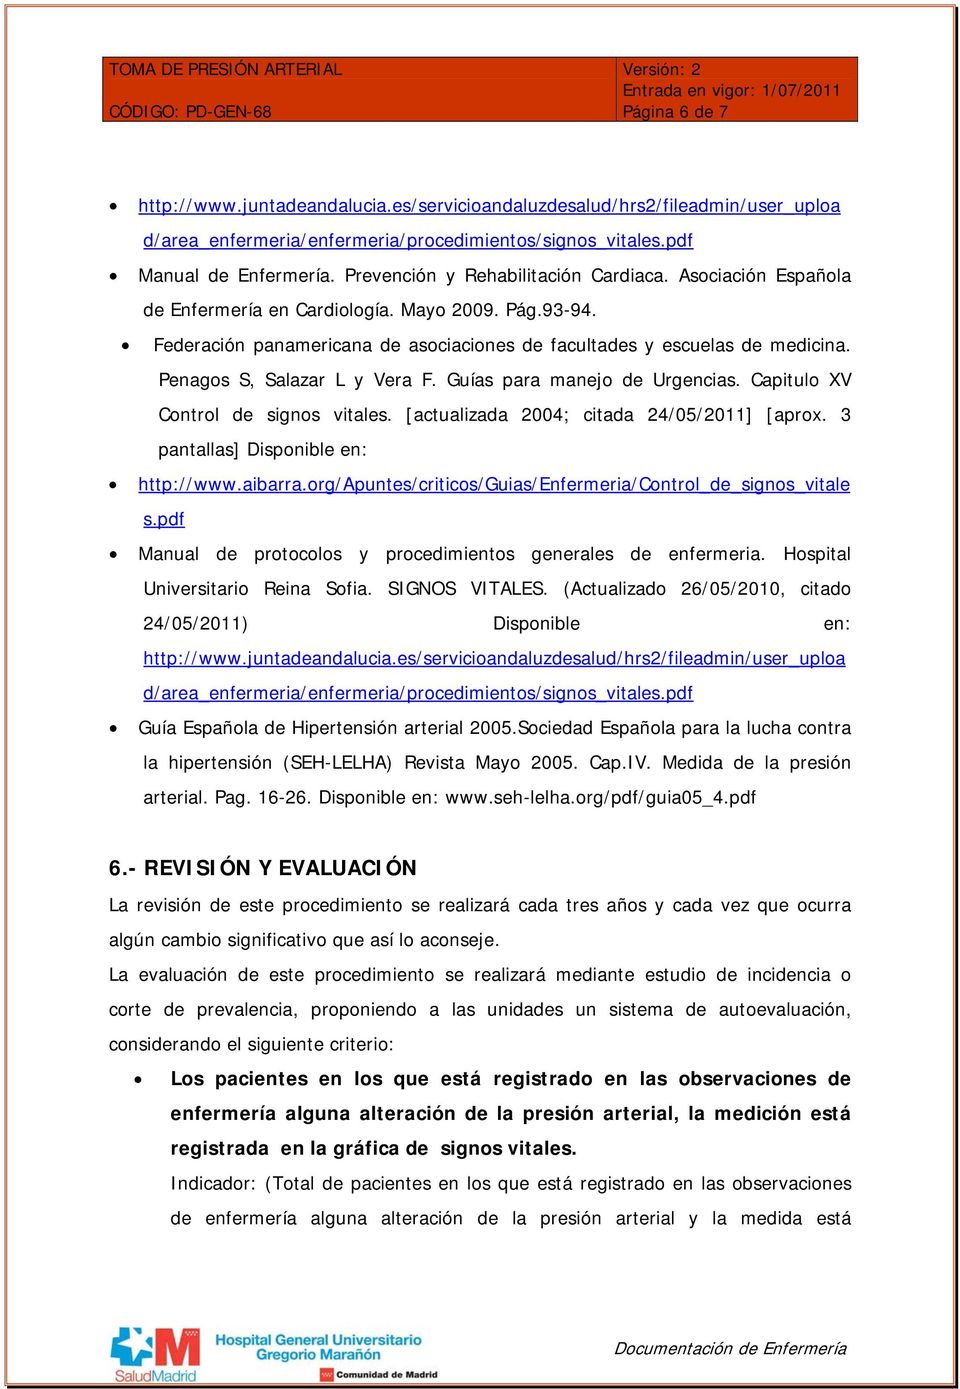 Penagos S, Salazar L y Vera F. Guías para manejo de Urgencias. Capitulo XV Control de signos vitales. [actualizada 2004; citada 24/05/2011] [aprox. 3 pantallas] Disponible en: http://www.aibarra.